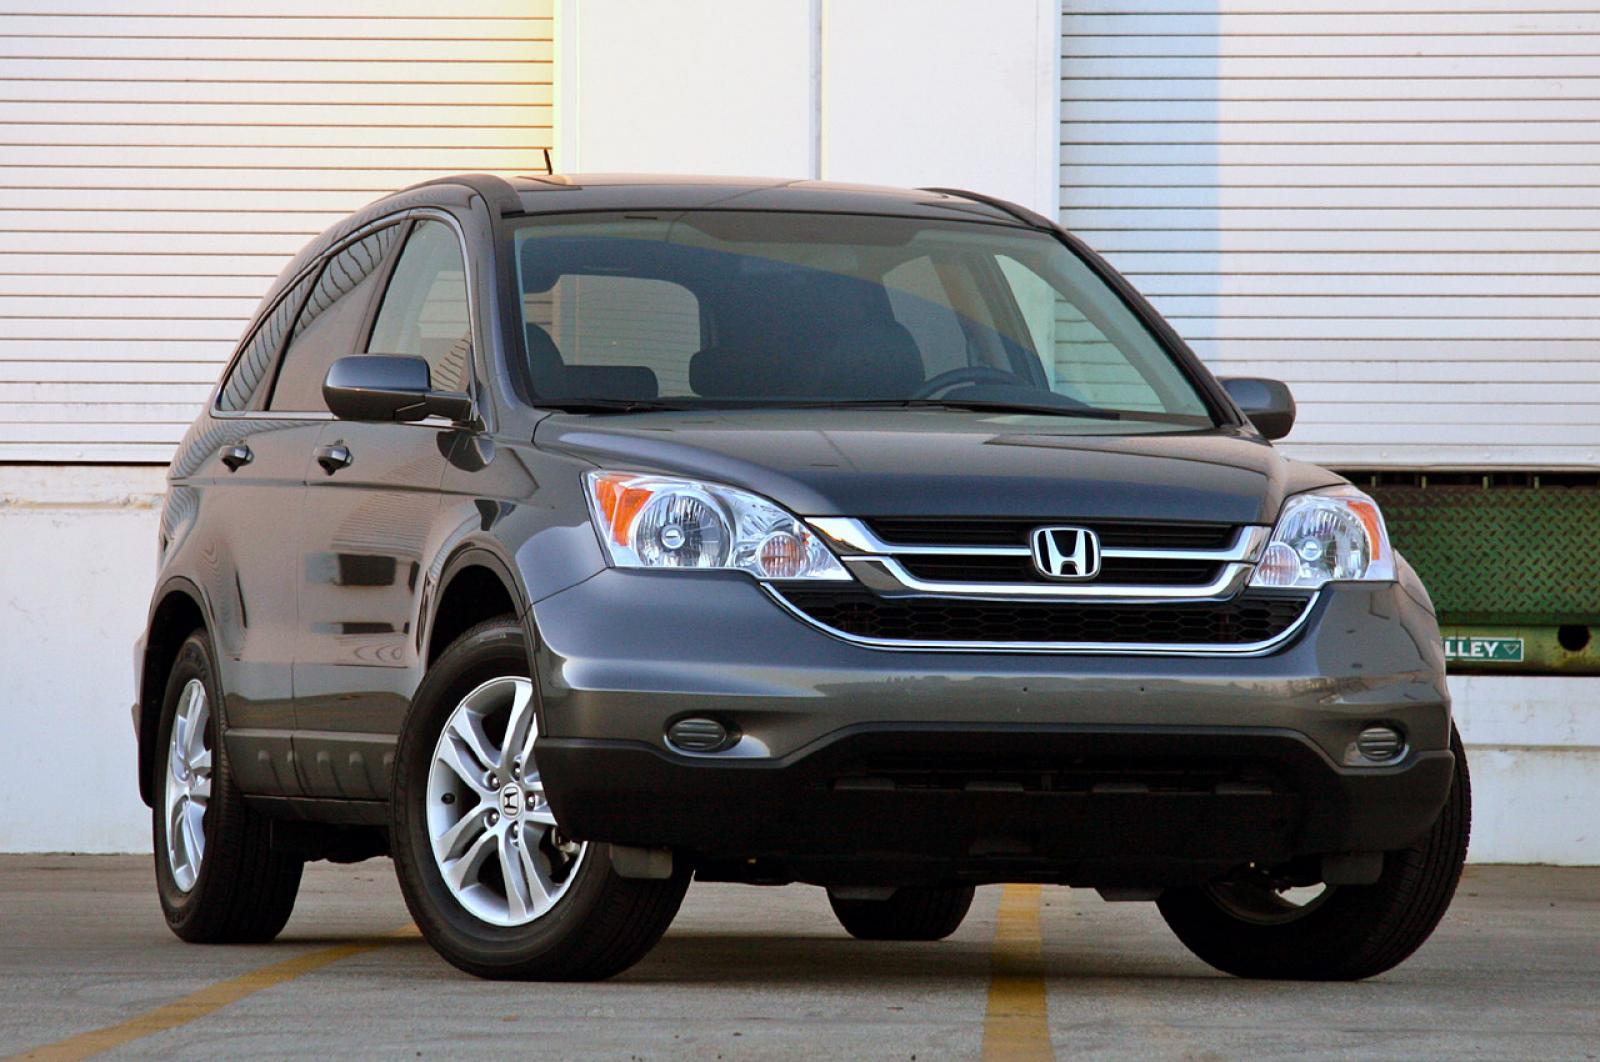 Вид 2010. Honda CR-V 2010. Honda CRV 2010. Honda CR-V 3 2010. CR-V Honda 2008-2010.